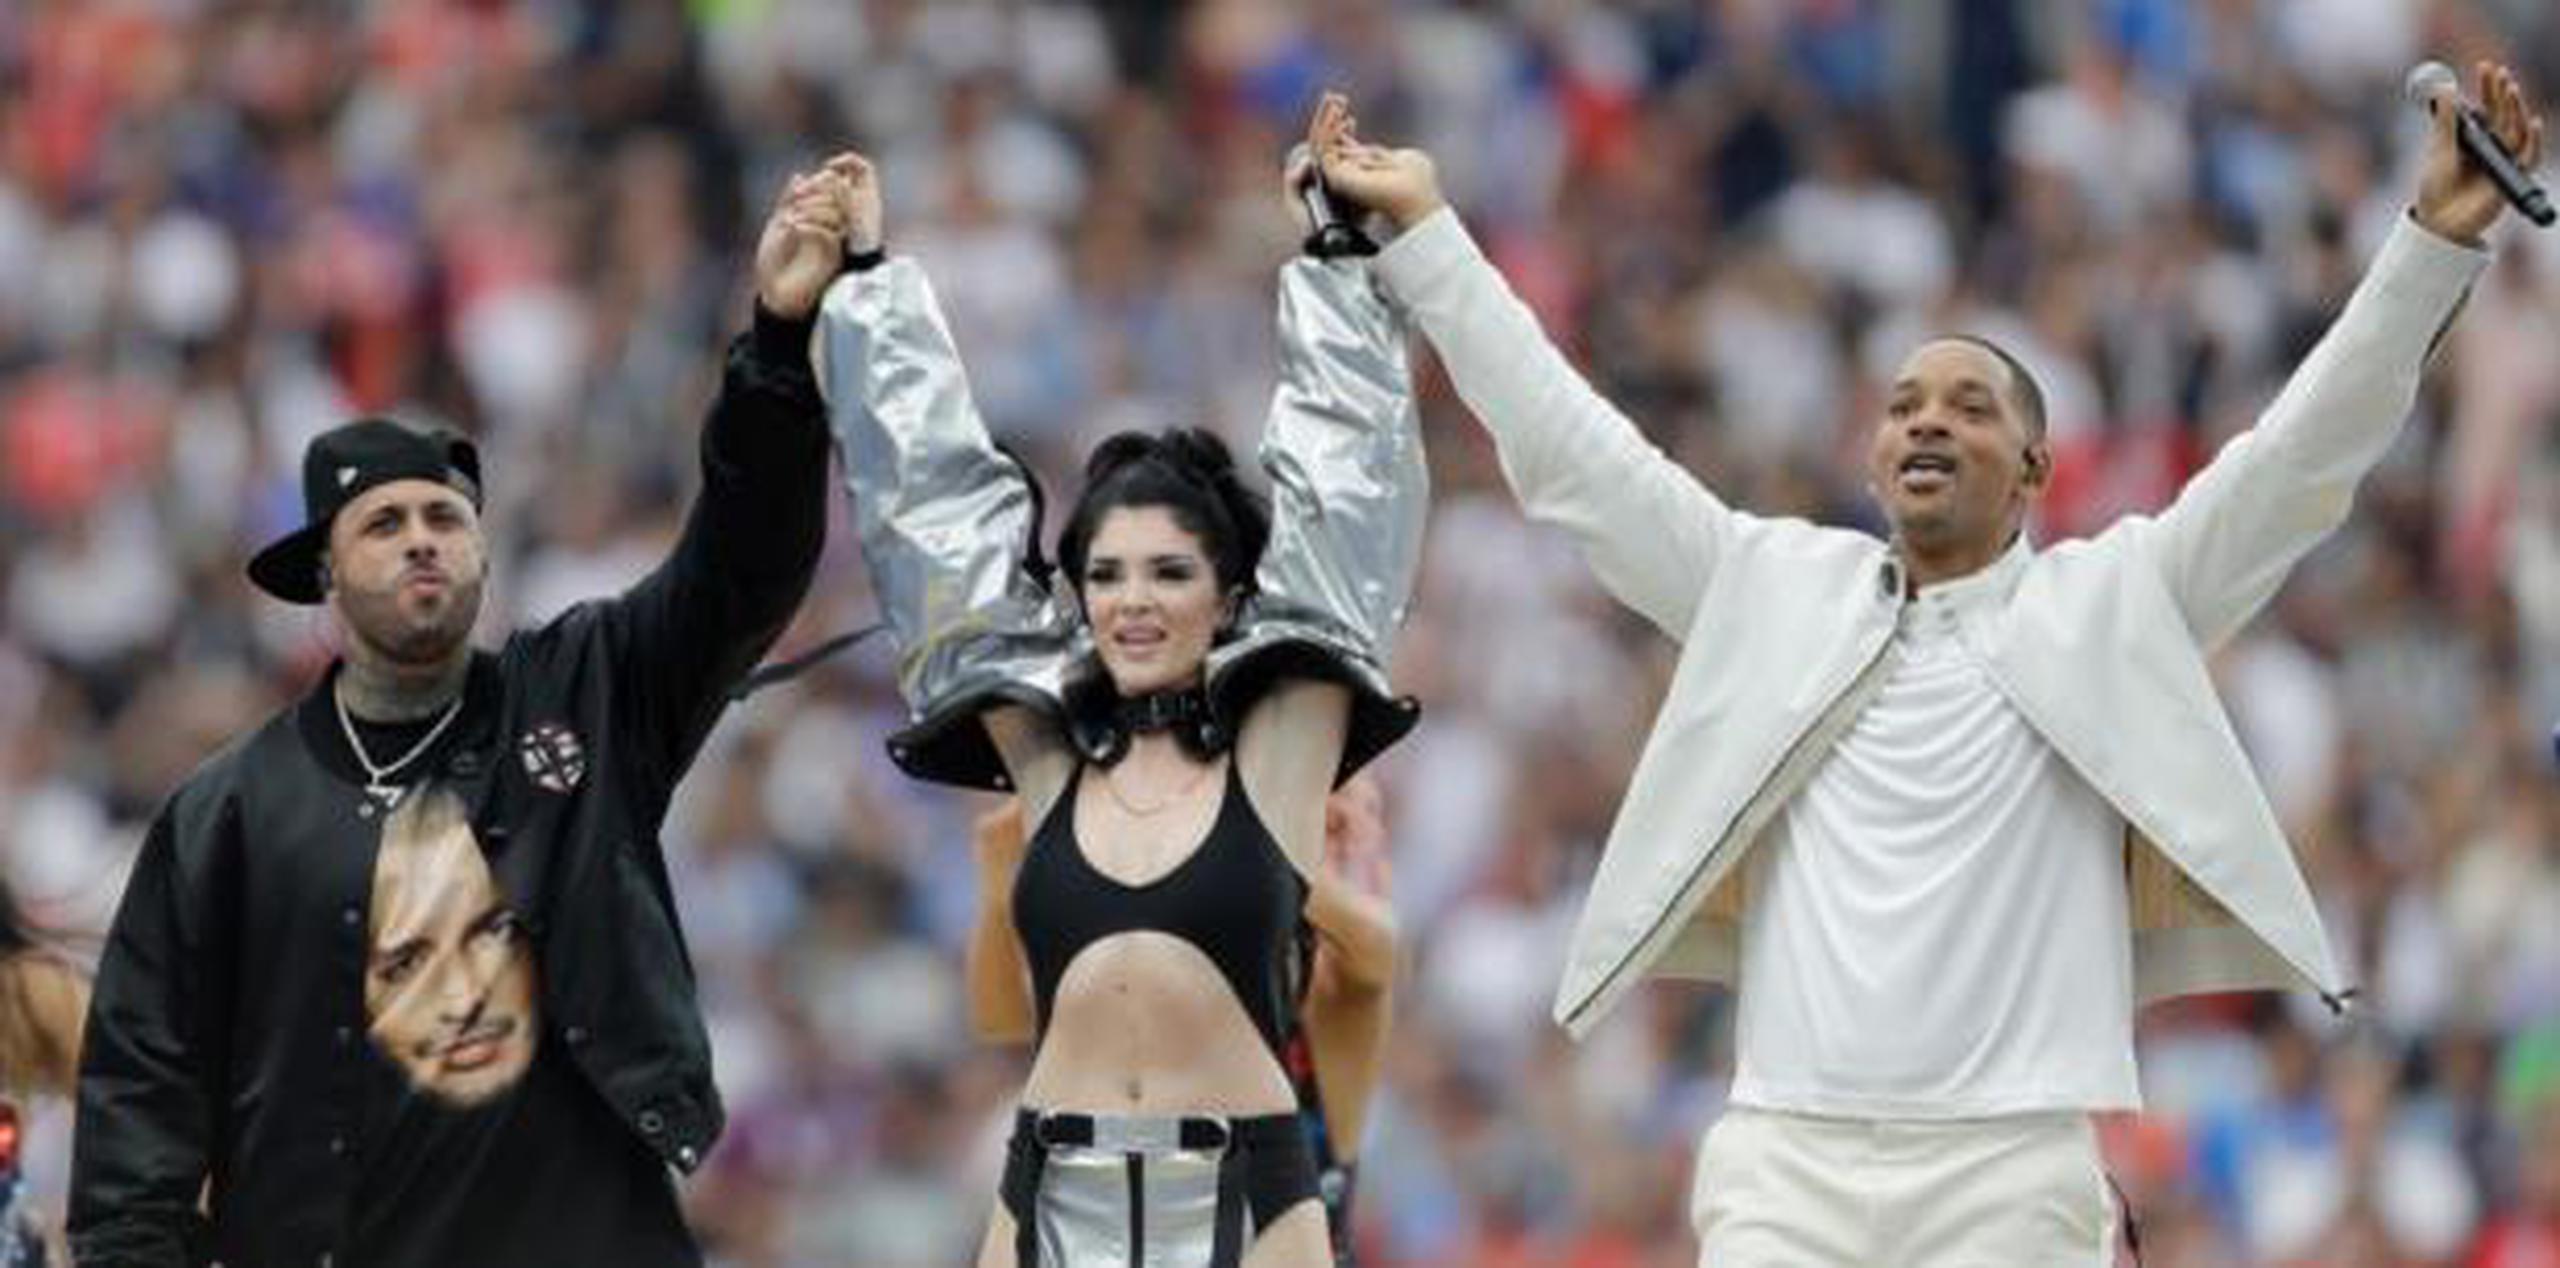 Este año, el reguetonero puertorriqueño Nicky Jam fue uno de los artistas a cargo de cantar el himno del Mundial y también tuvo una participación en el show de clausura. (AP)